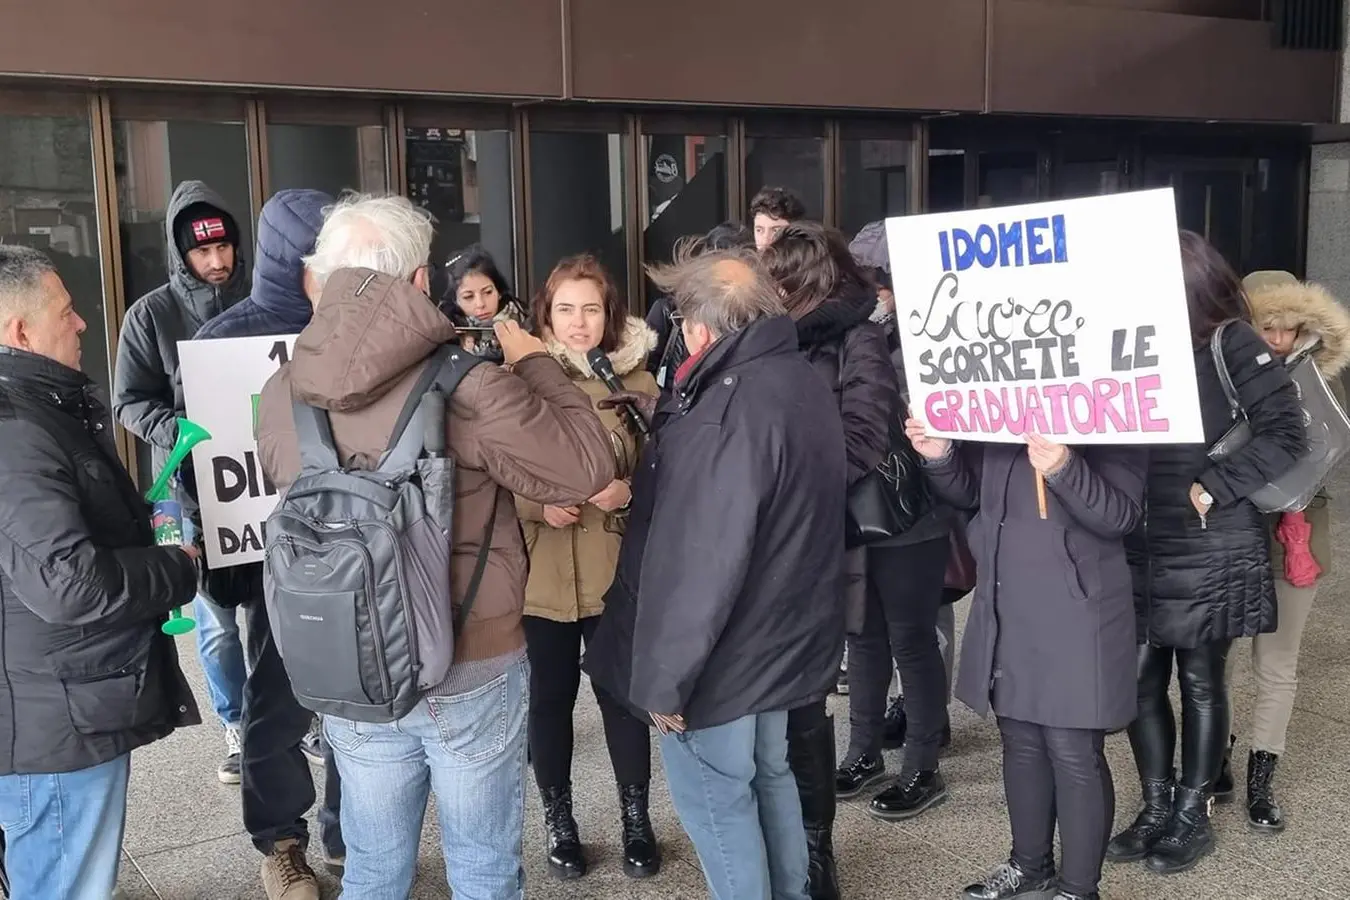 La protesta degli idonei Laore in consiglio regionale  (L'Unione Sarda)